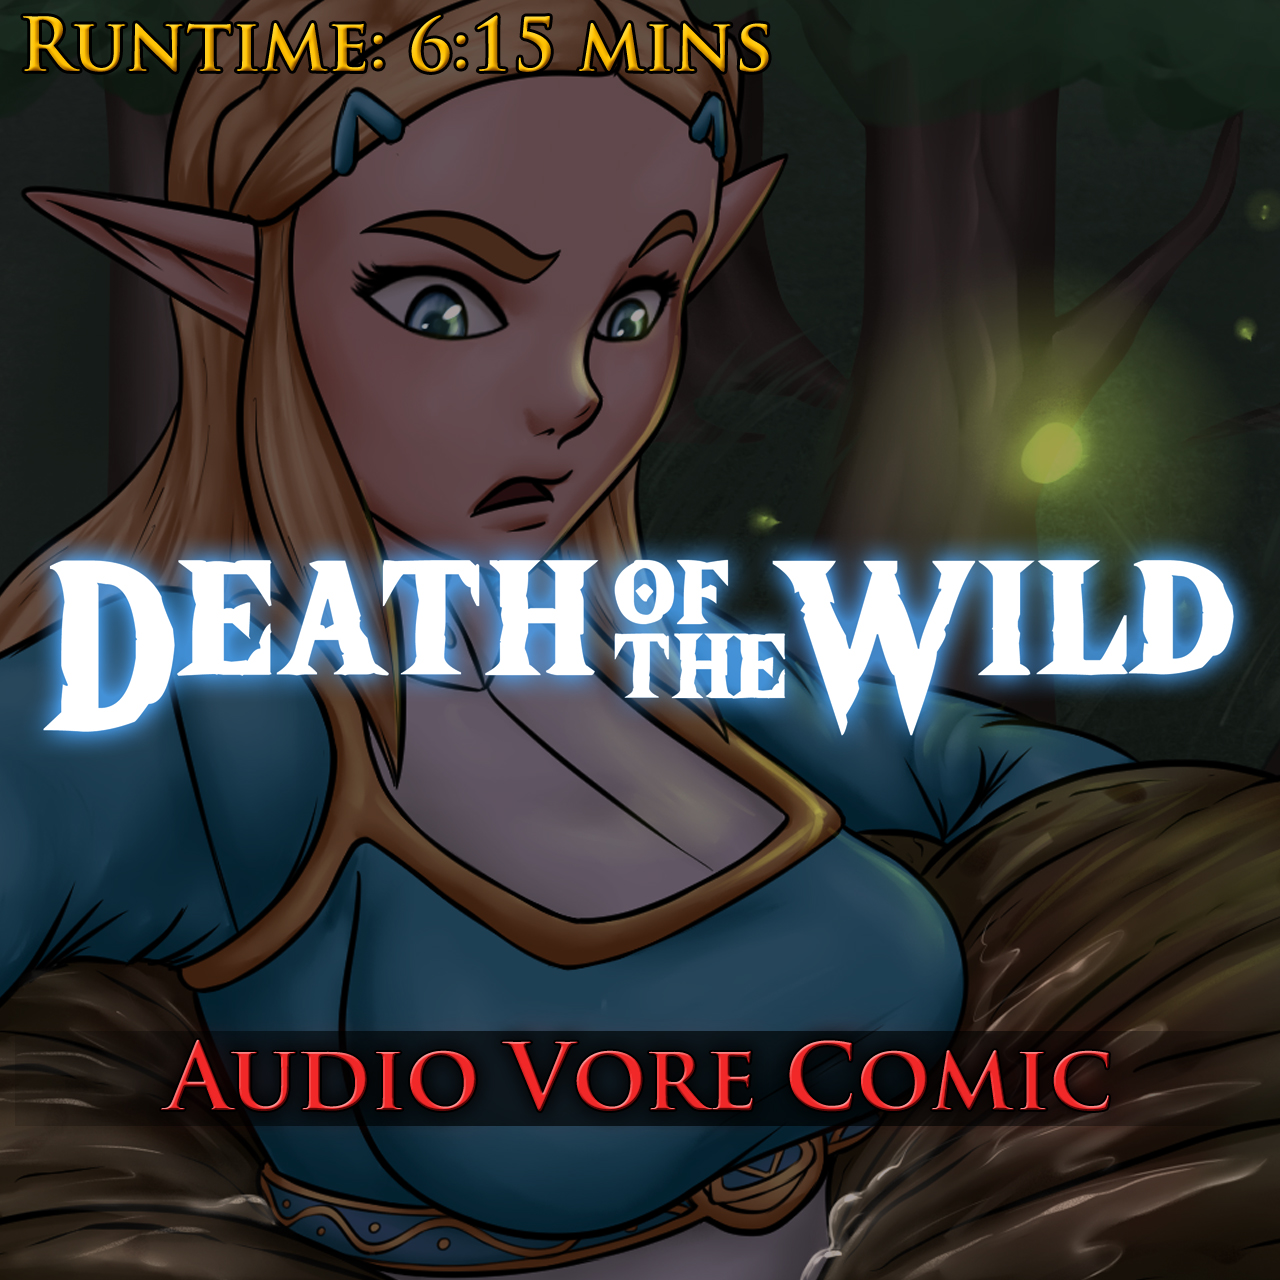 Death of the Wild - Audio Vore Comic